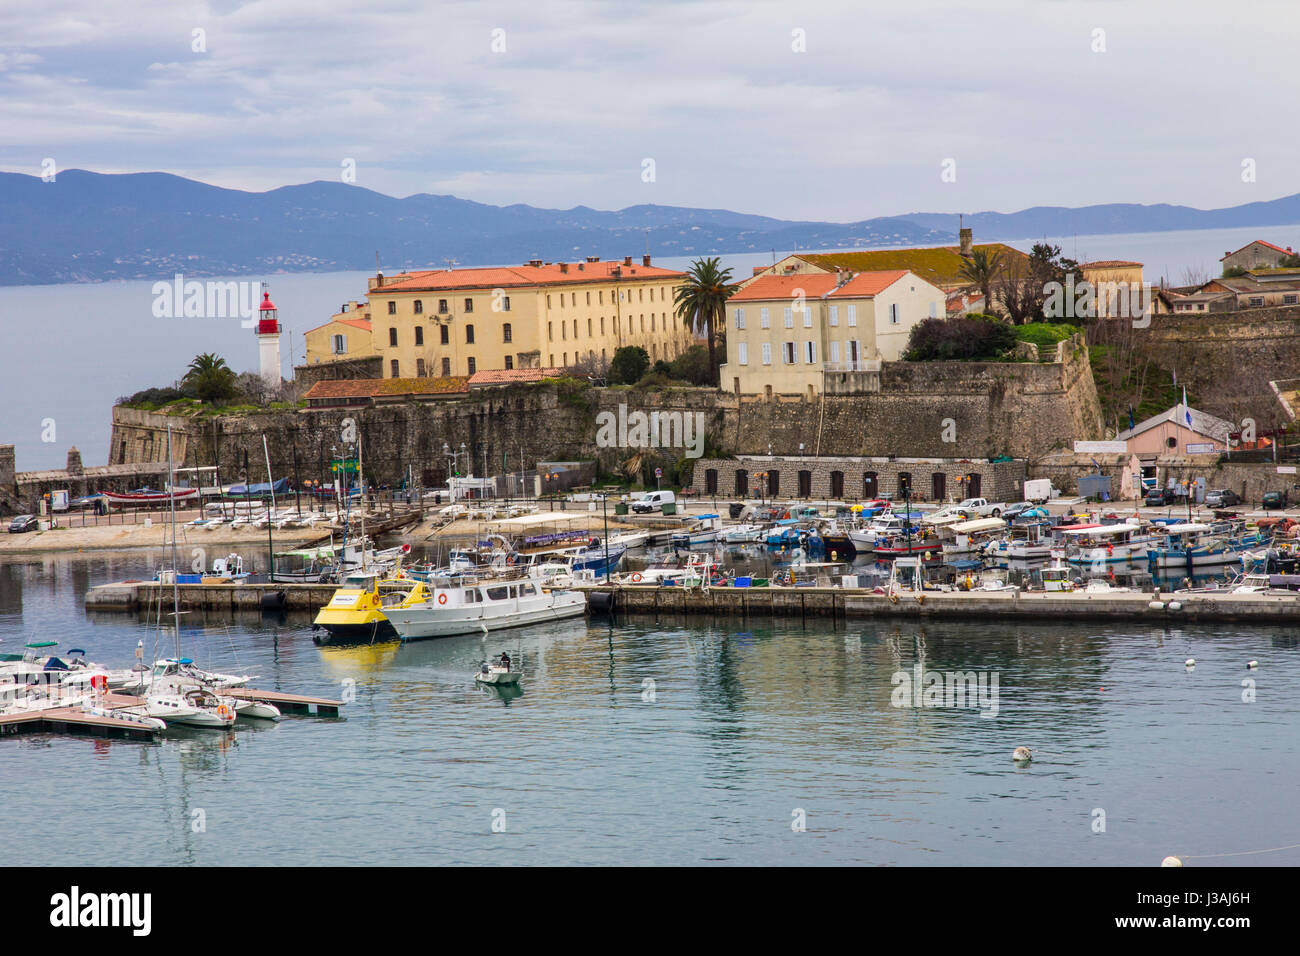 Ein Blick aus dem Hafen von Ajaccio und seine Mauern umgebene Zitadelle aus dem 16. Jahrhundert. Ajaccio, Korsika. Stockfoto